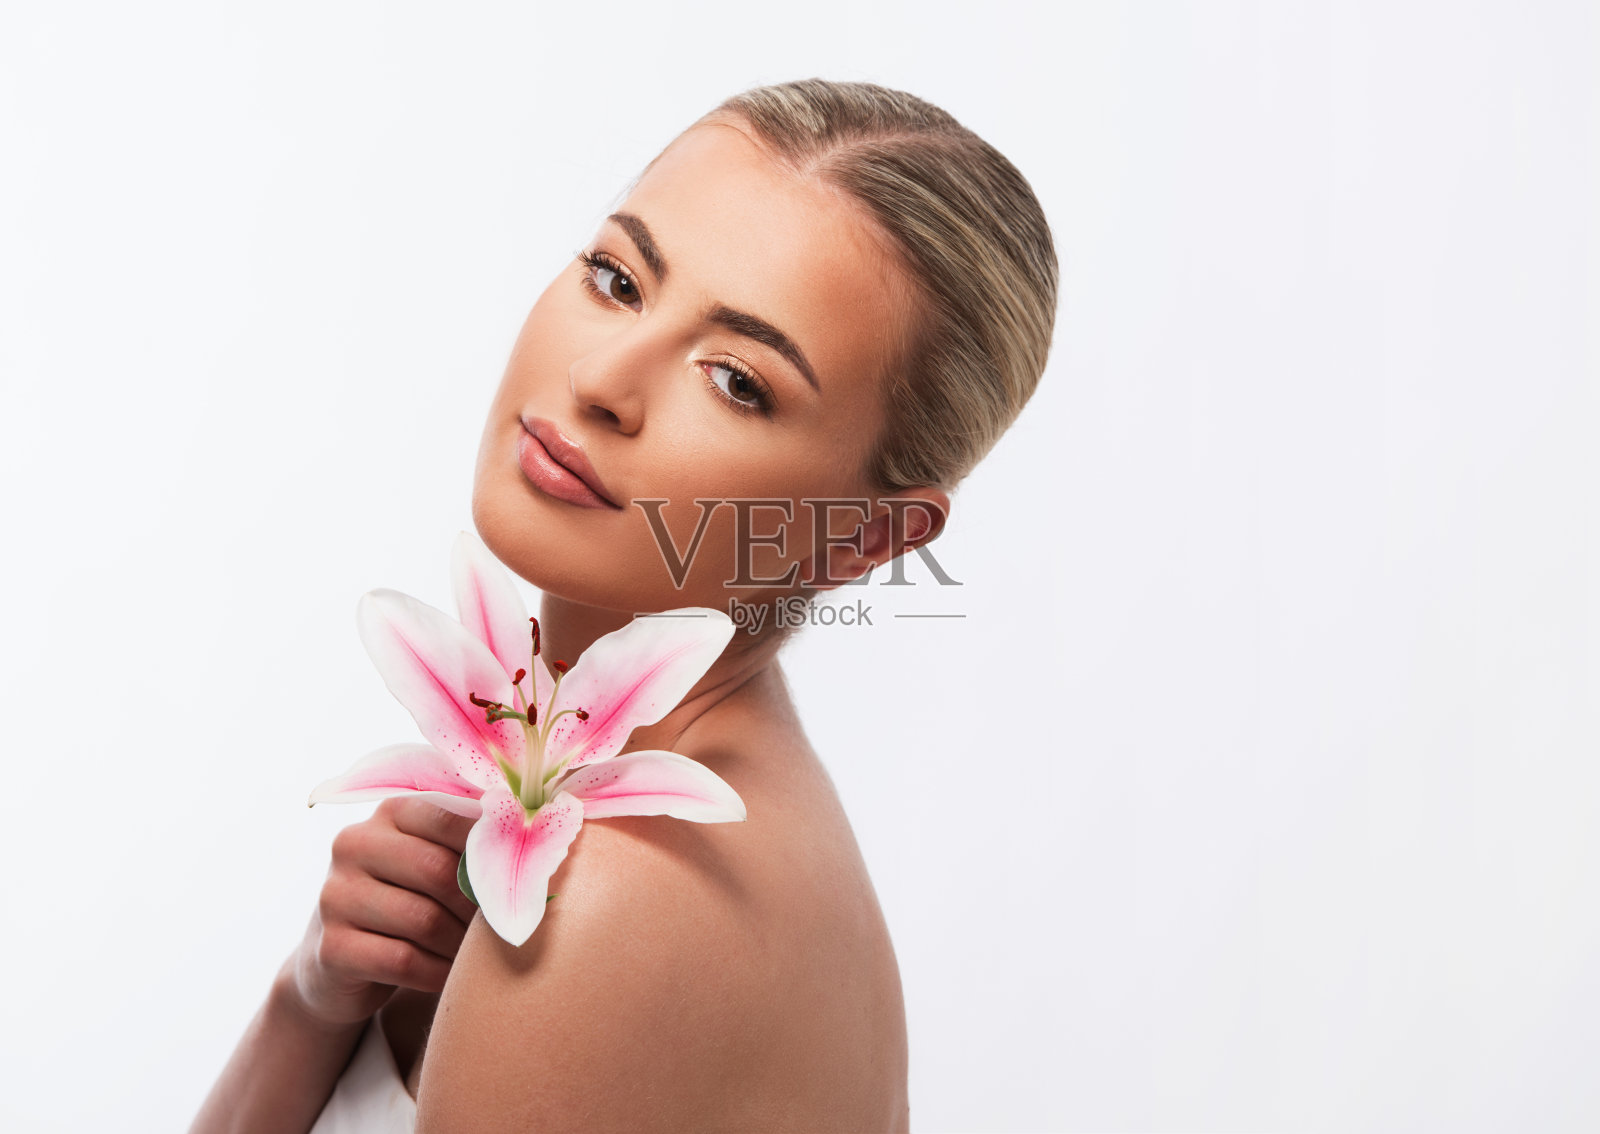 一个美丽的女人举着一朵美丽的粉红色百合花在白色的背景上照片摄影图片